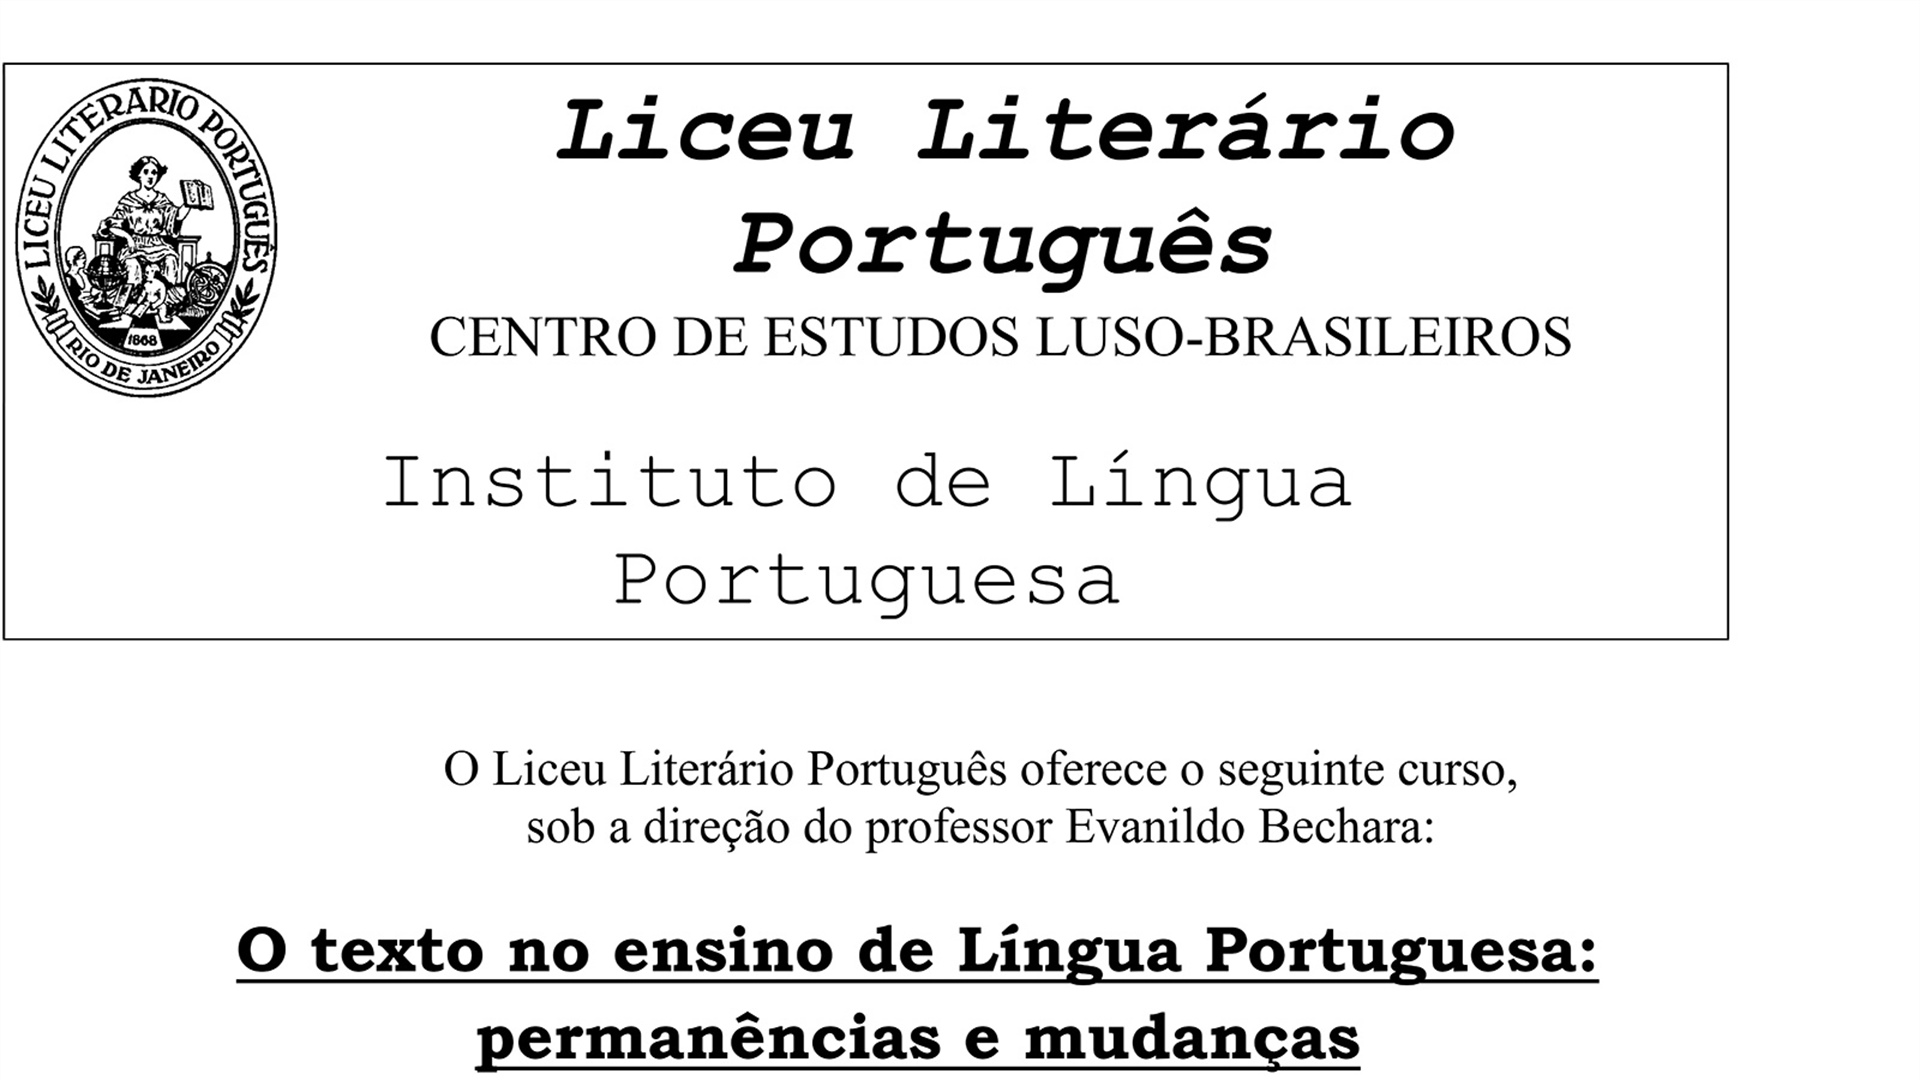 O texto no ensino de Língua Portuguesa: permanências e mudanças